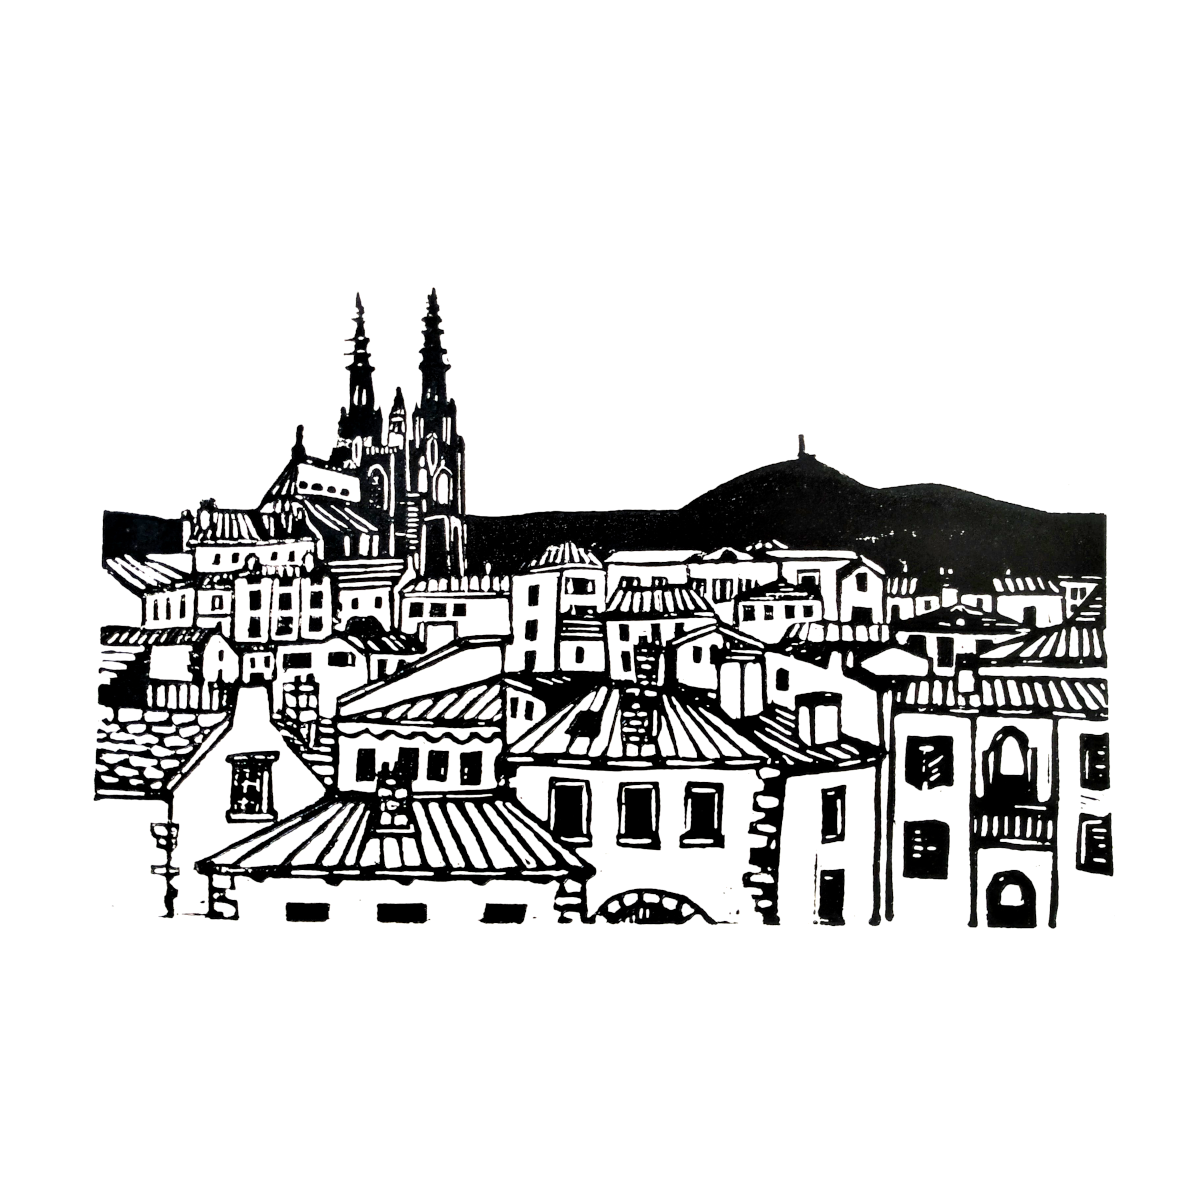 Représentation d'une vue de Clermont-Ferrand réalisée en linogravure et imprimée à l'encre sur papier.